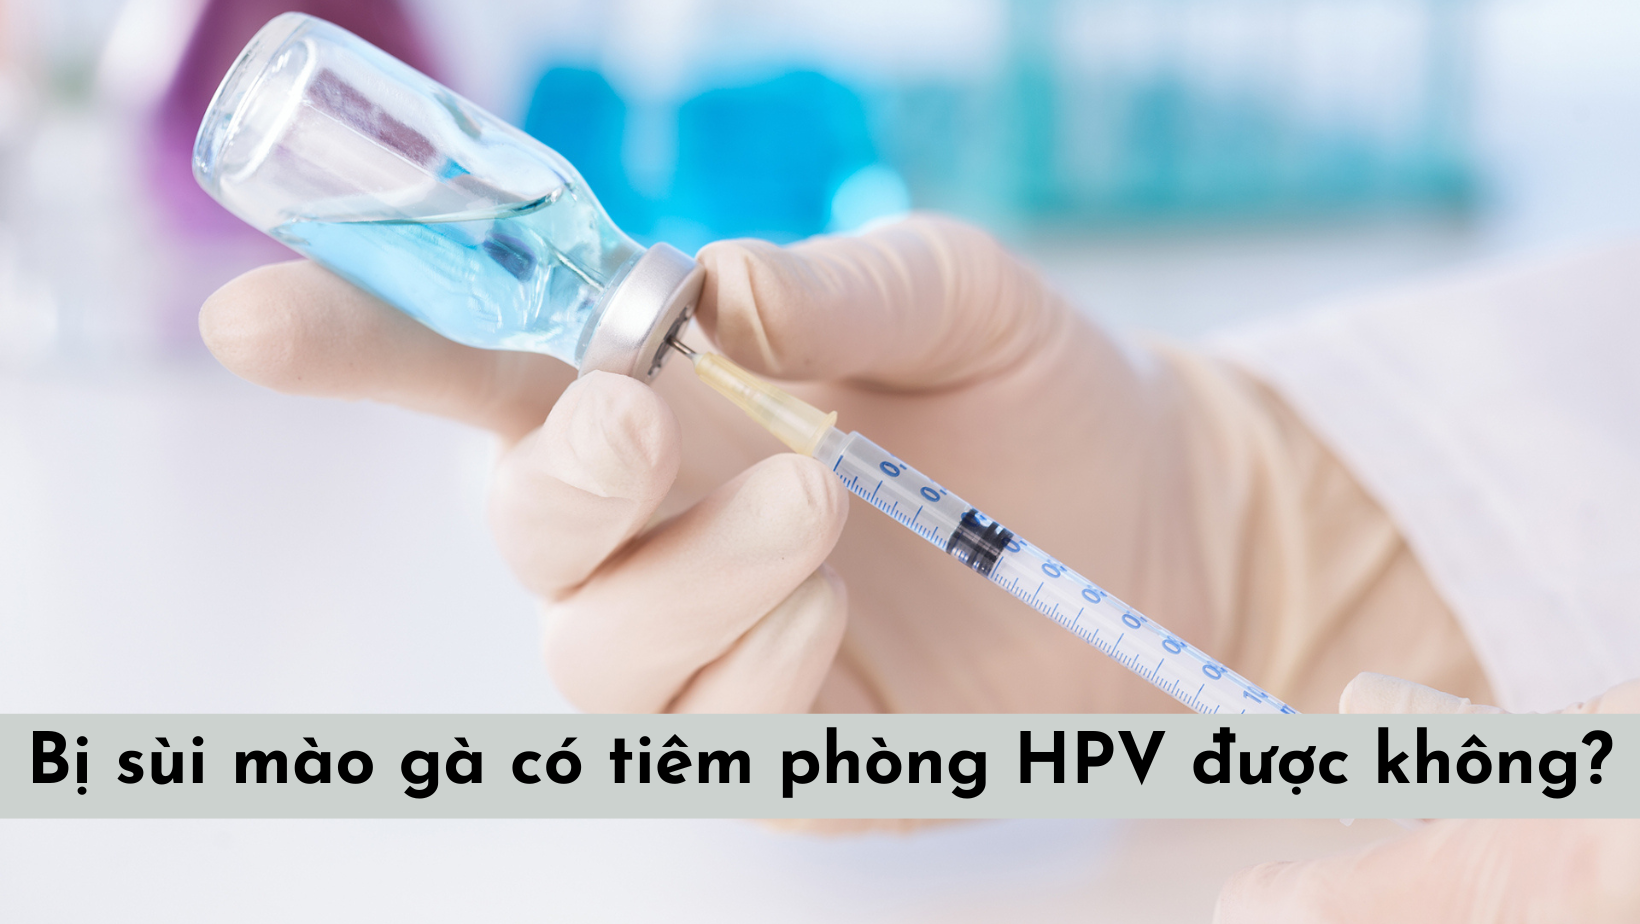 Bị sùi mào gà có tiêm phòng HPV được không?